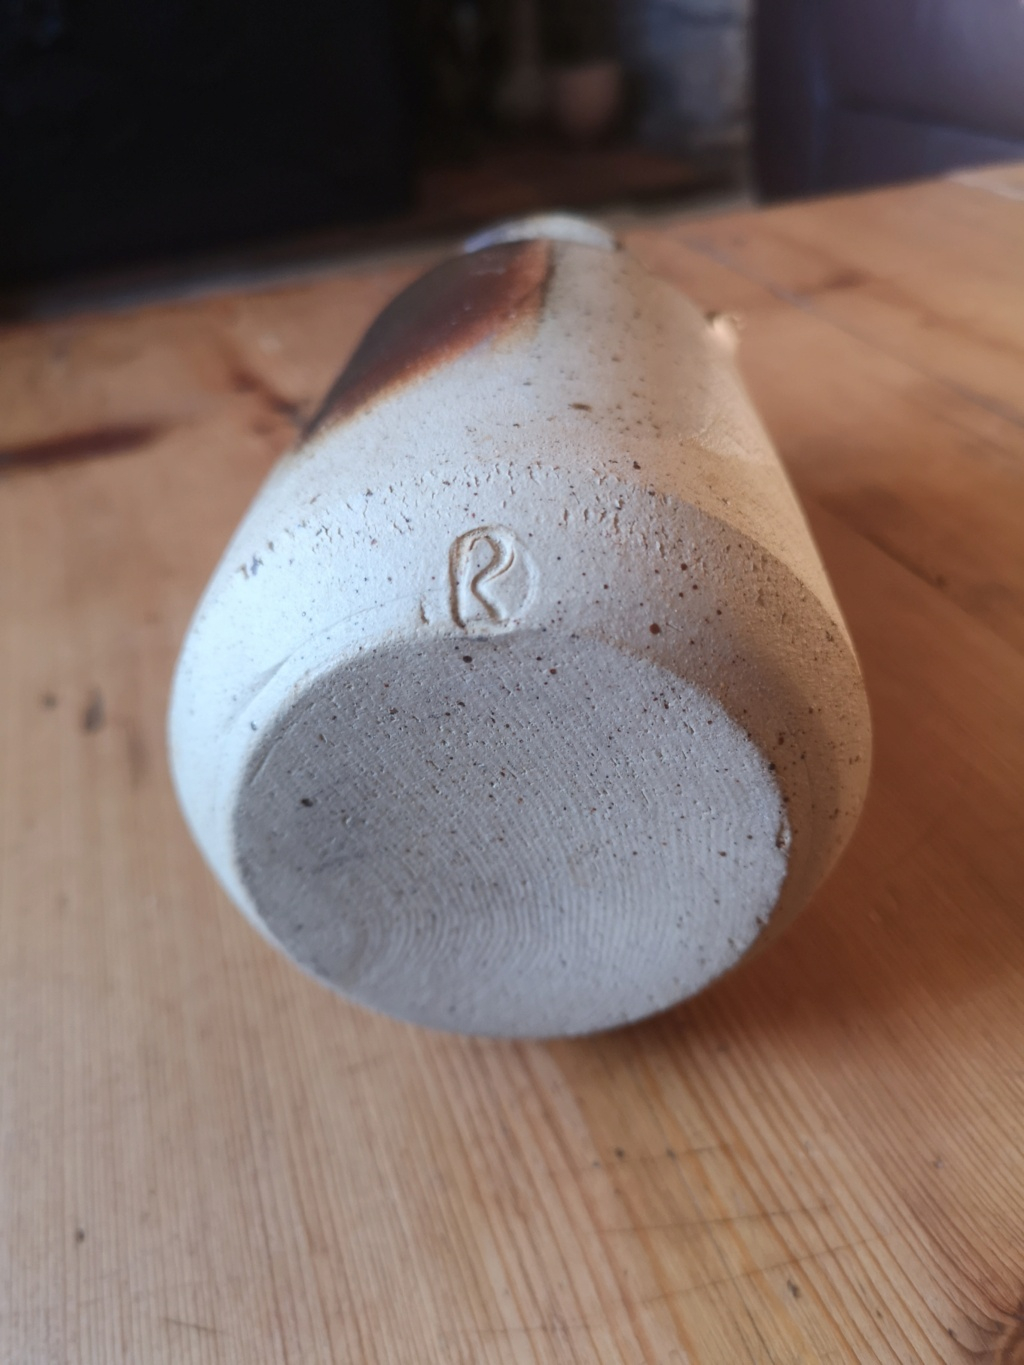 Stoneware lugged vase with R mark - Roger Leyshon?  Img_2208